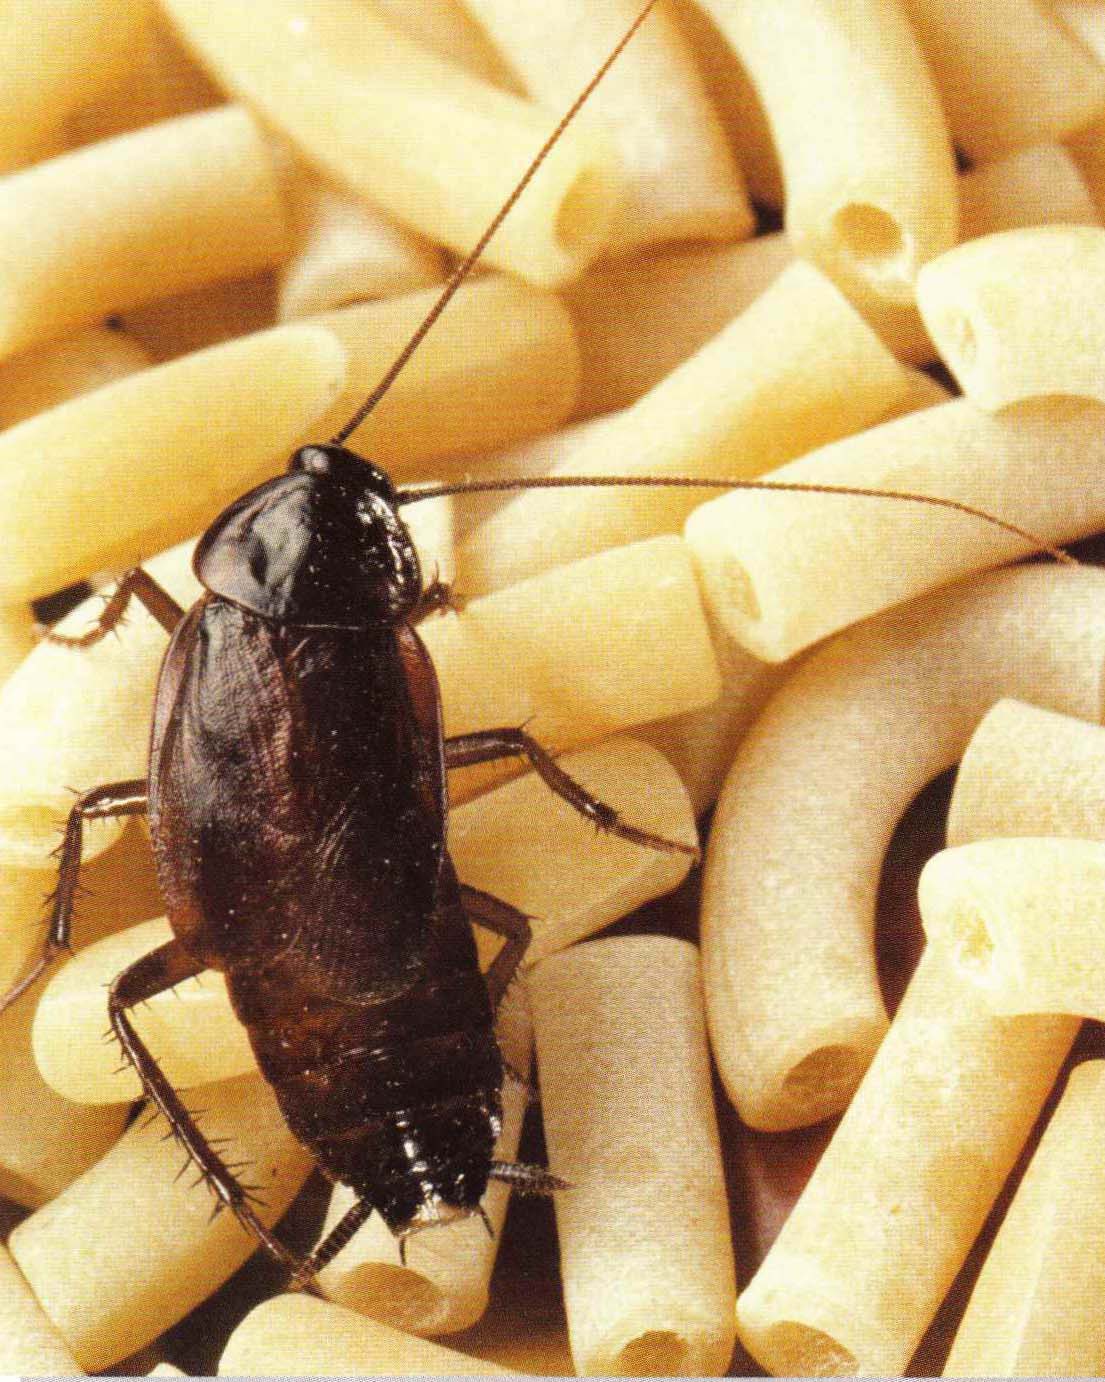 За 300 миллионов лет рацион обитающих в естественной среде тараканов ничуть не изменился - они по-прежнему кормятся растительной пищей.